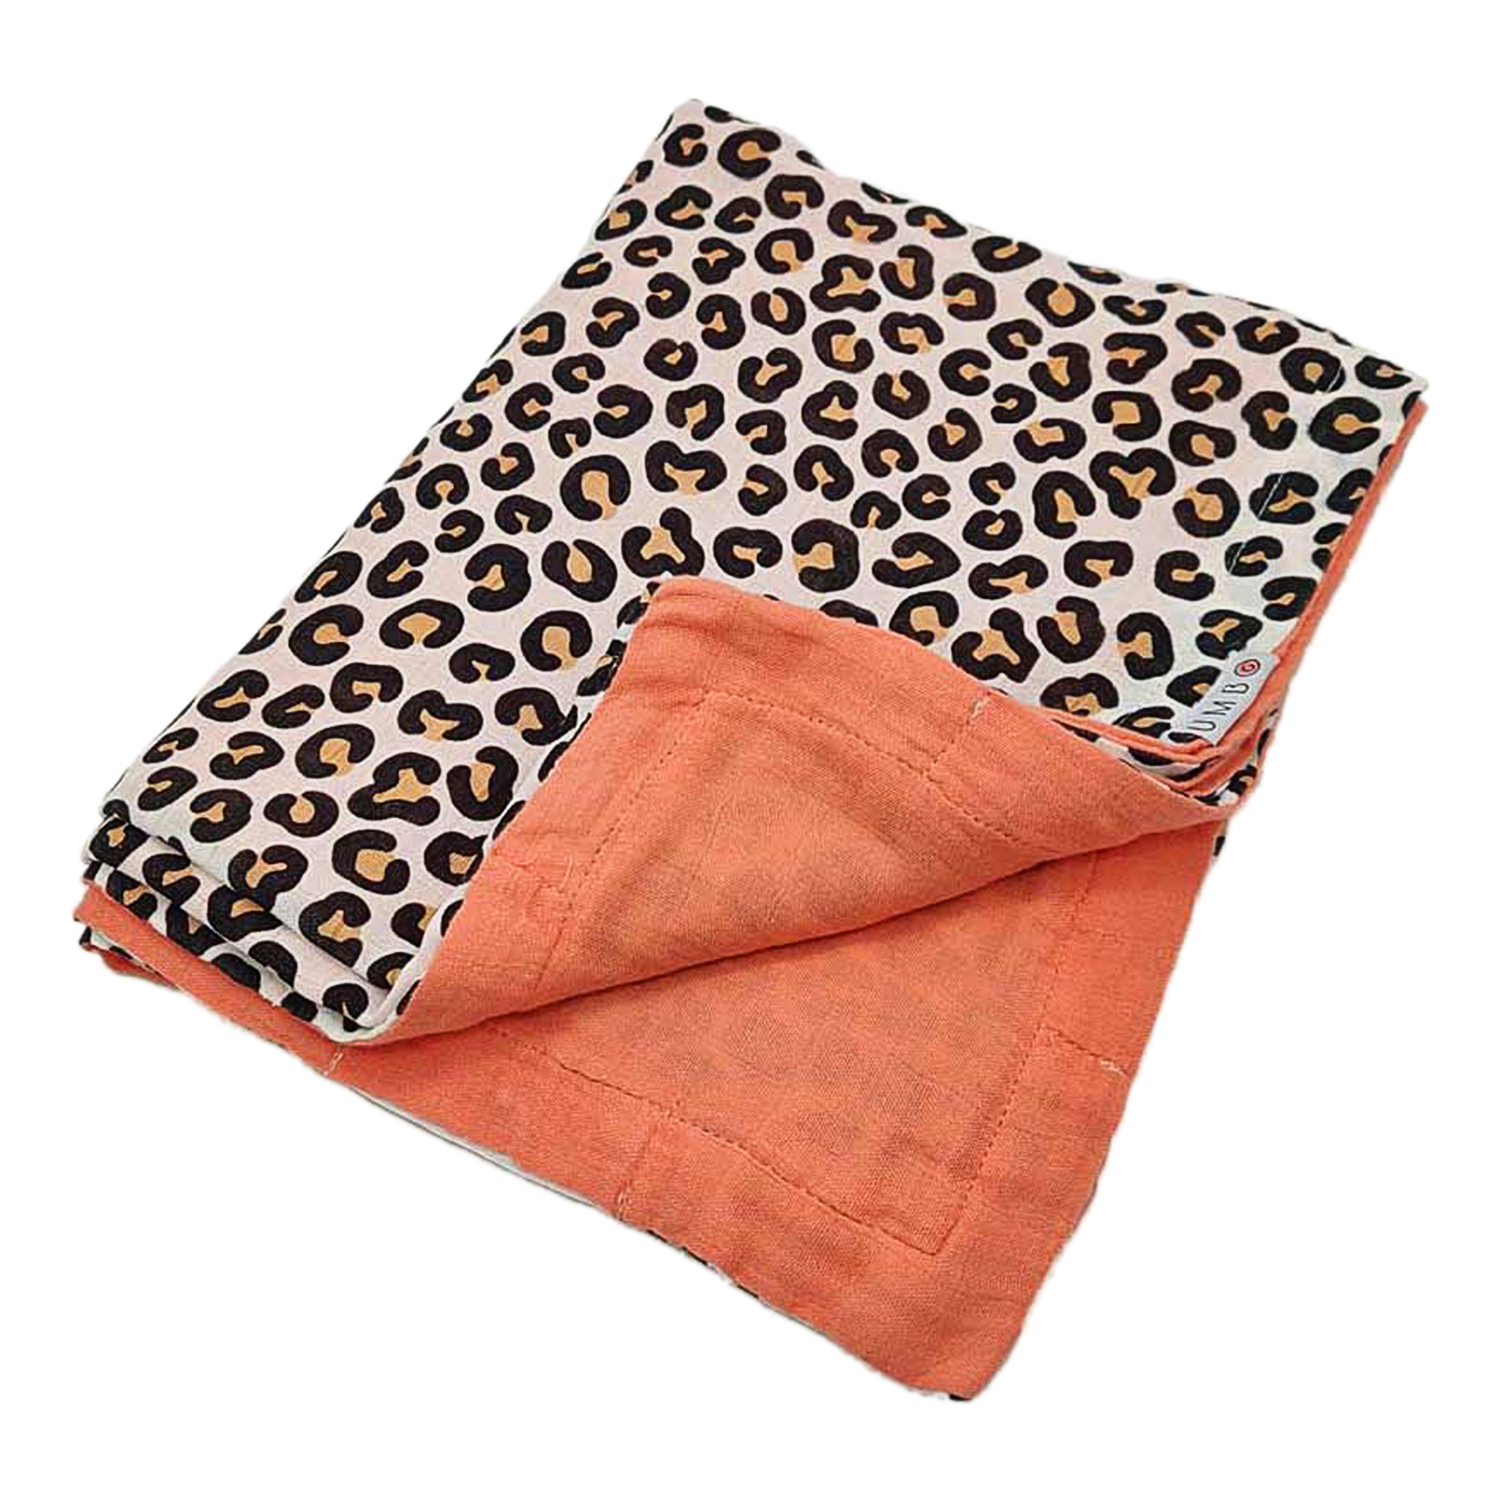 Купить Муслиновое одеяло Леопард и коралловый закат , 118х90 см UMBO детское, Нет цвета, 100%органический хлопок